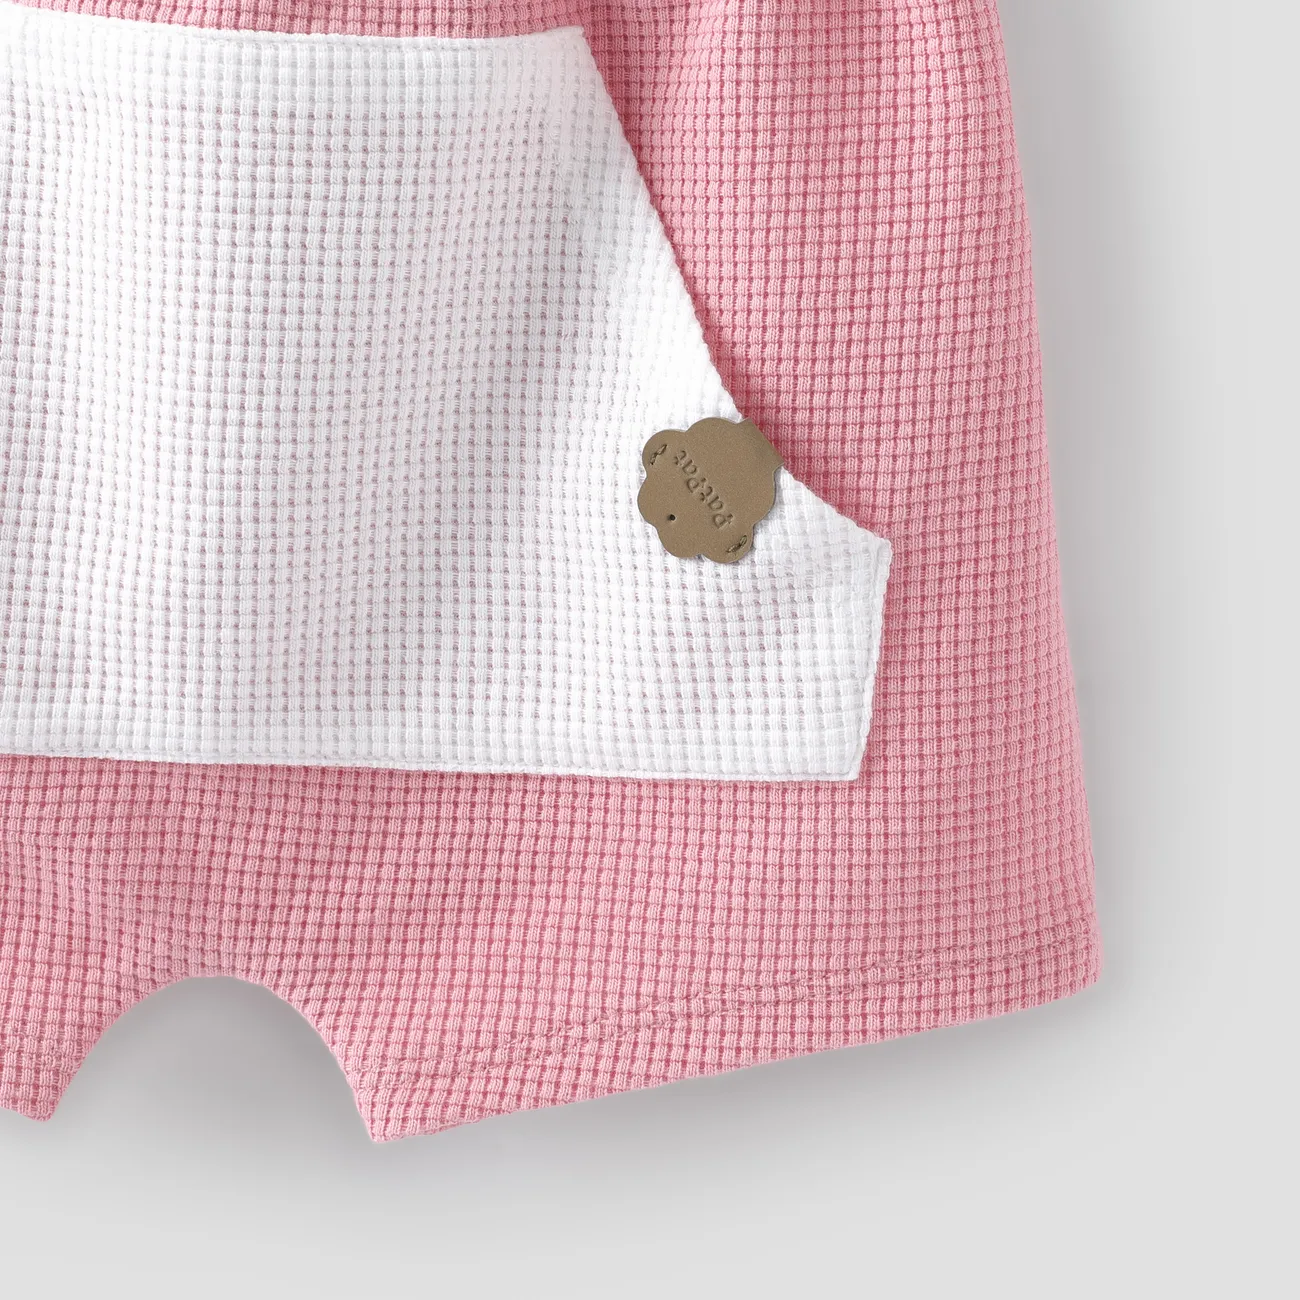 Baby Junge/Mädchen 2-teiliges einfarbiges T-Shirt und Shorts-Set  rosa big image 1